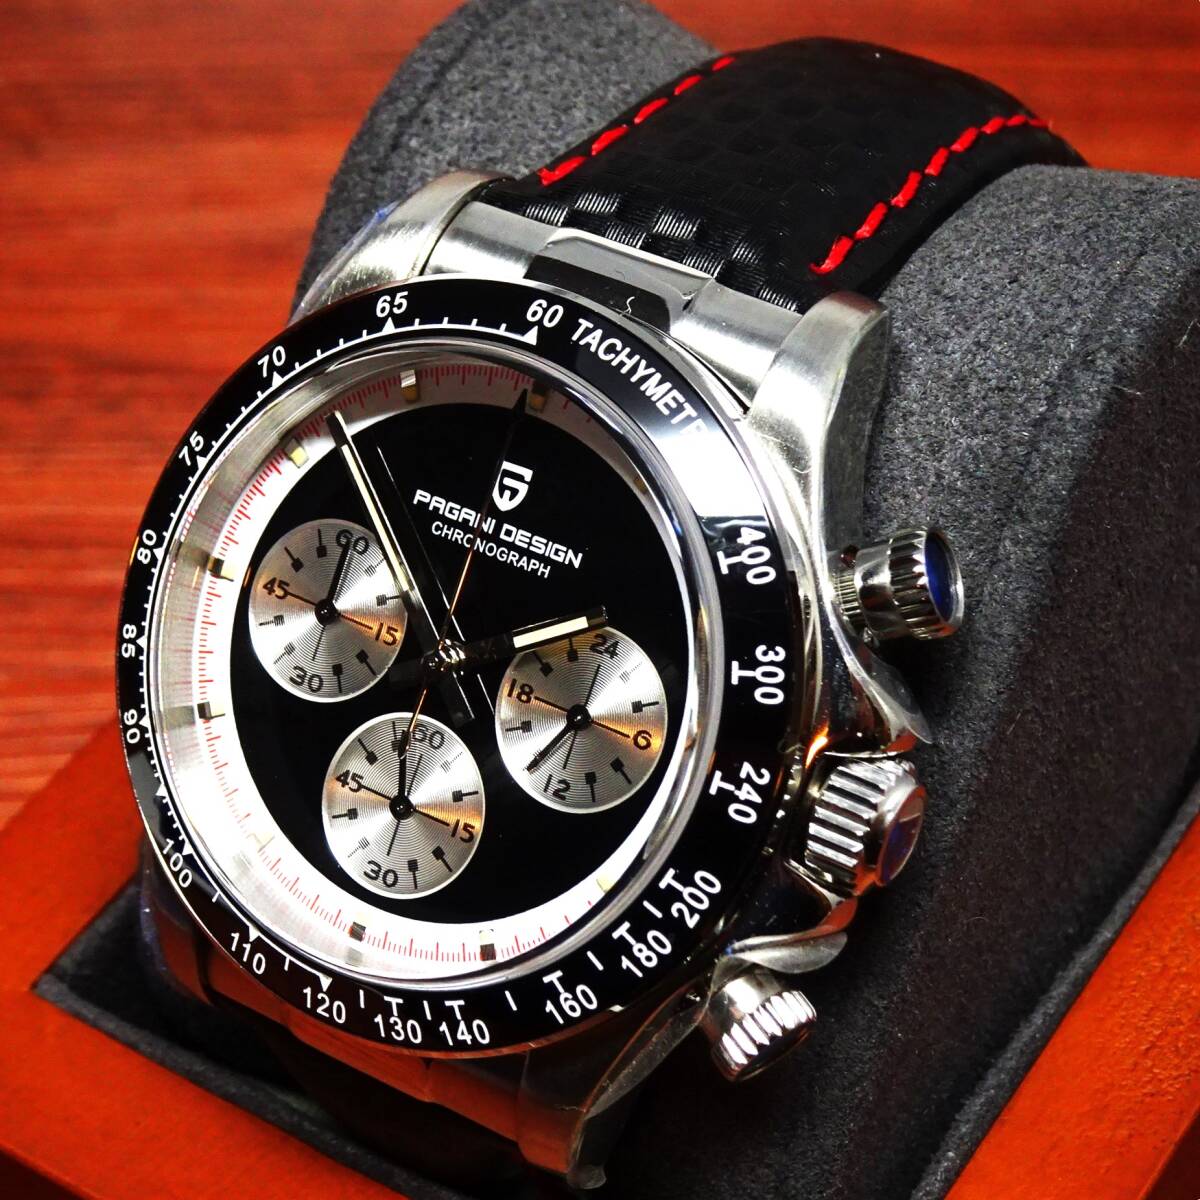 送料無料・新品・パガーニデザイン・メンズ・セイコー製VK63クロノグラフクオーツ式腕時計・オマージュ・カーボン柄本革モデル・PD-1676・Bの画像1